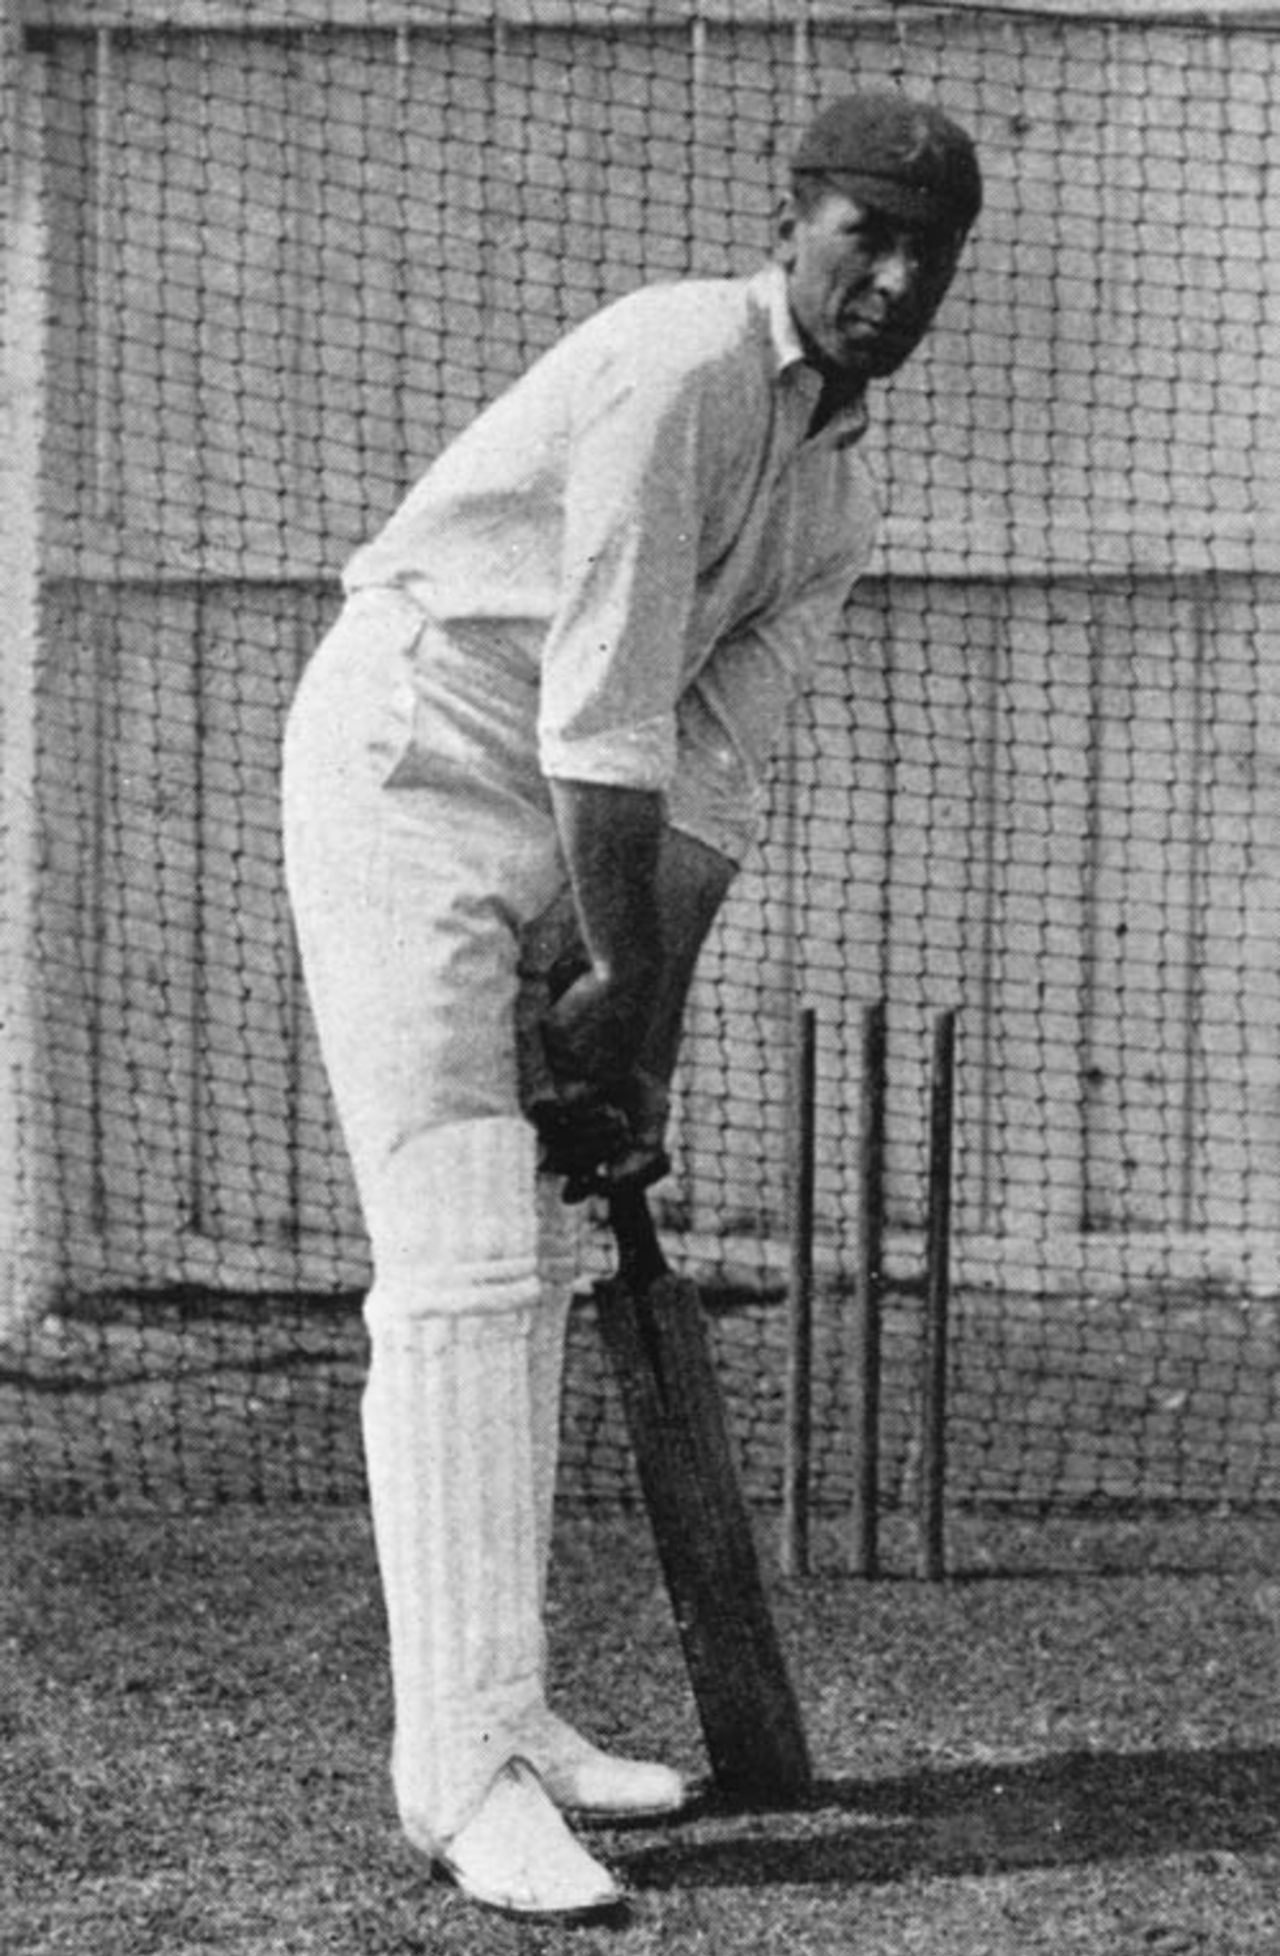 Harold Garnett at a net session, 1905